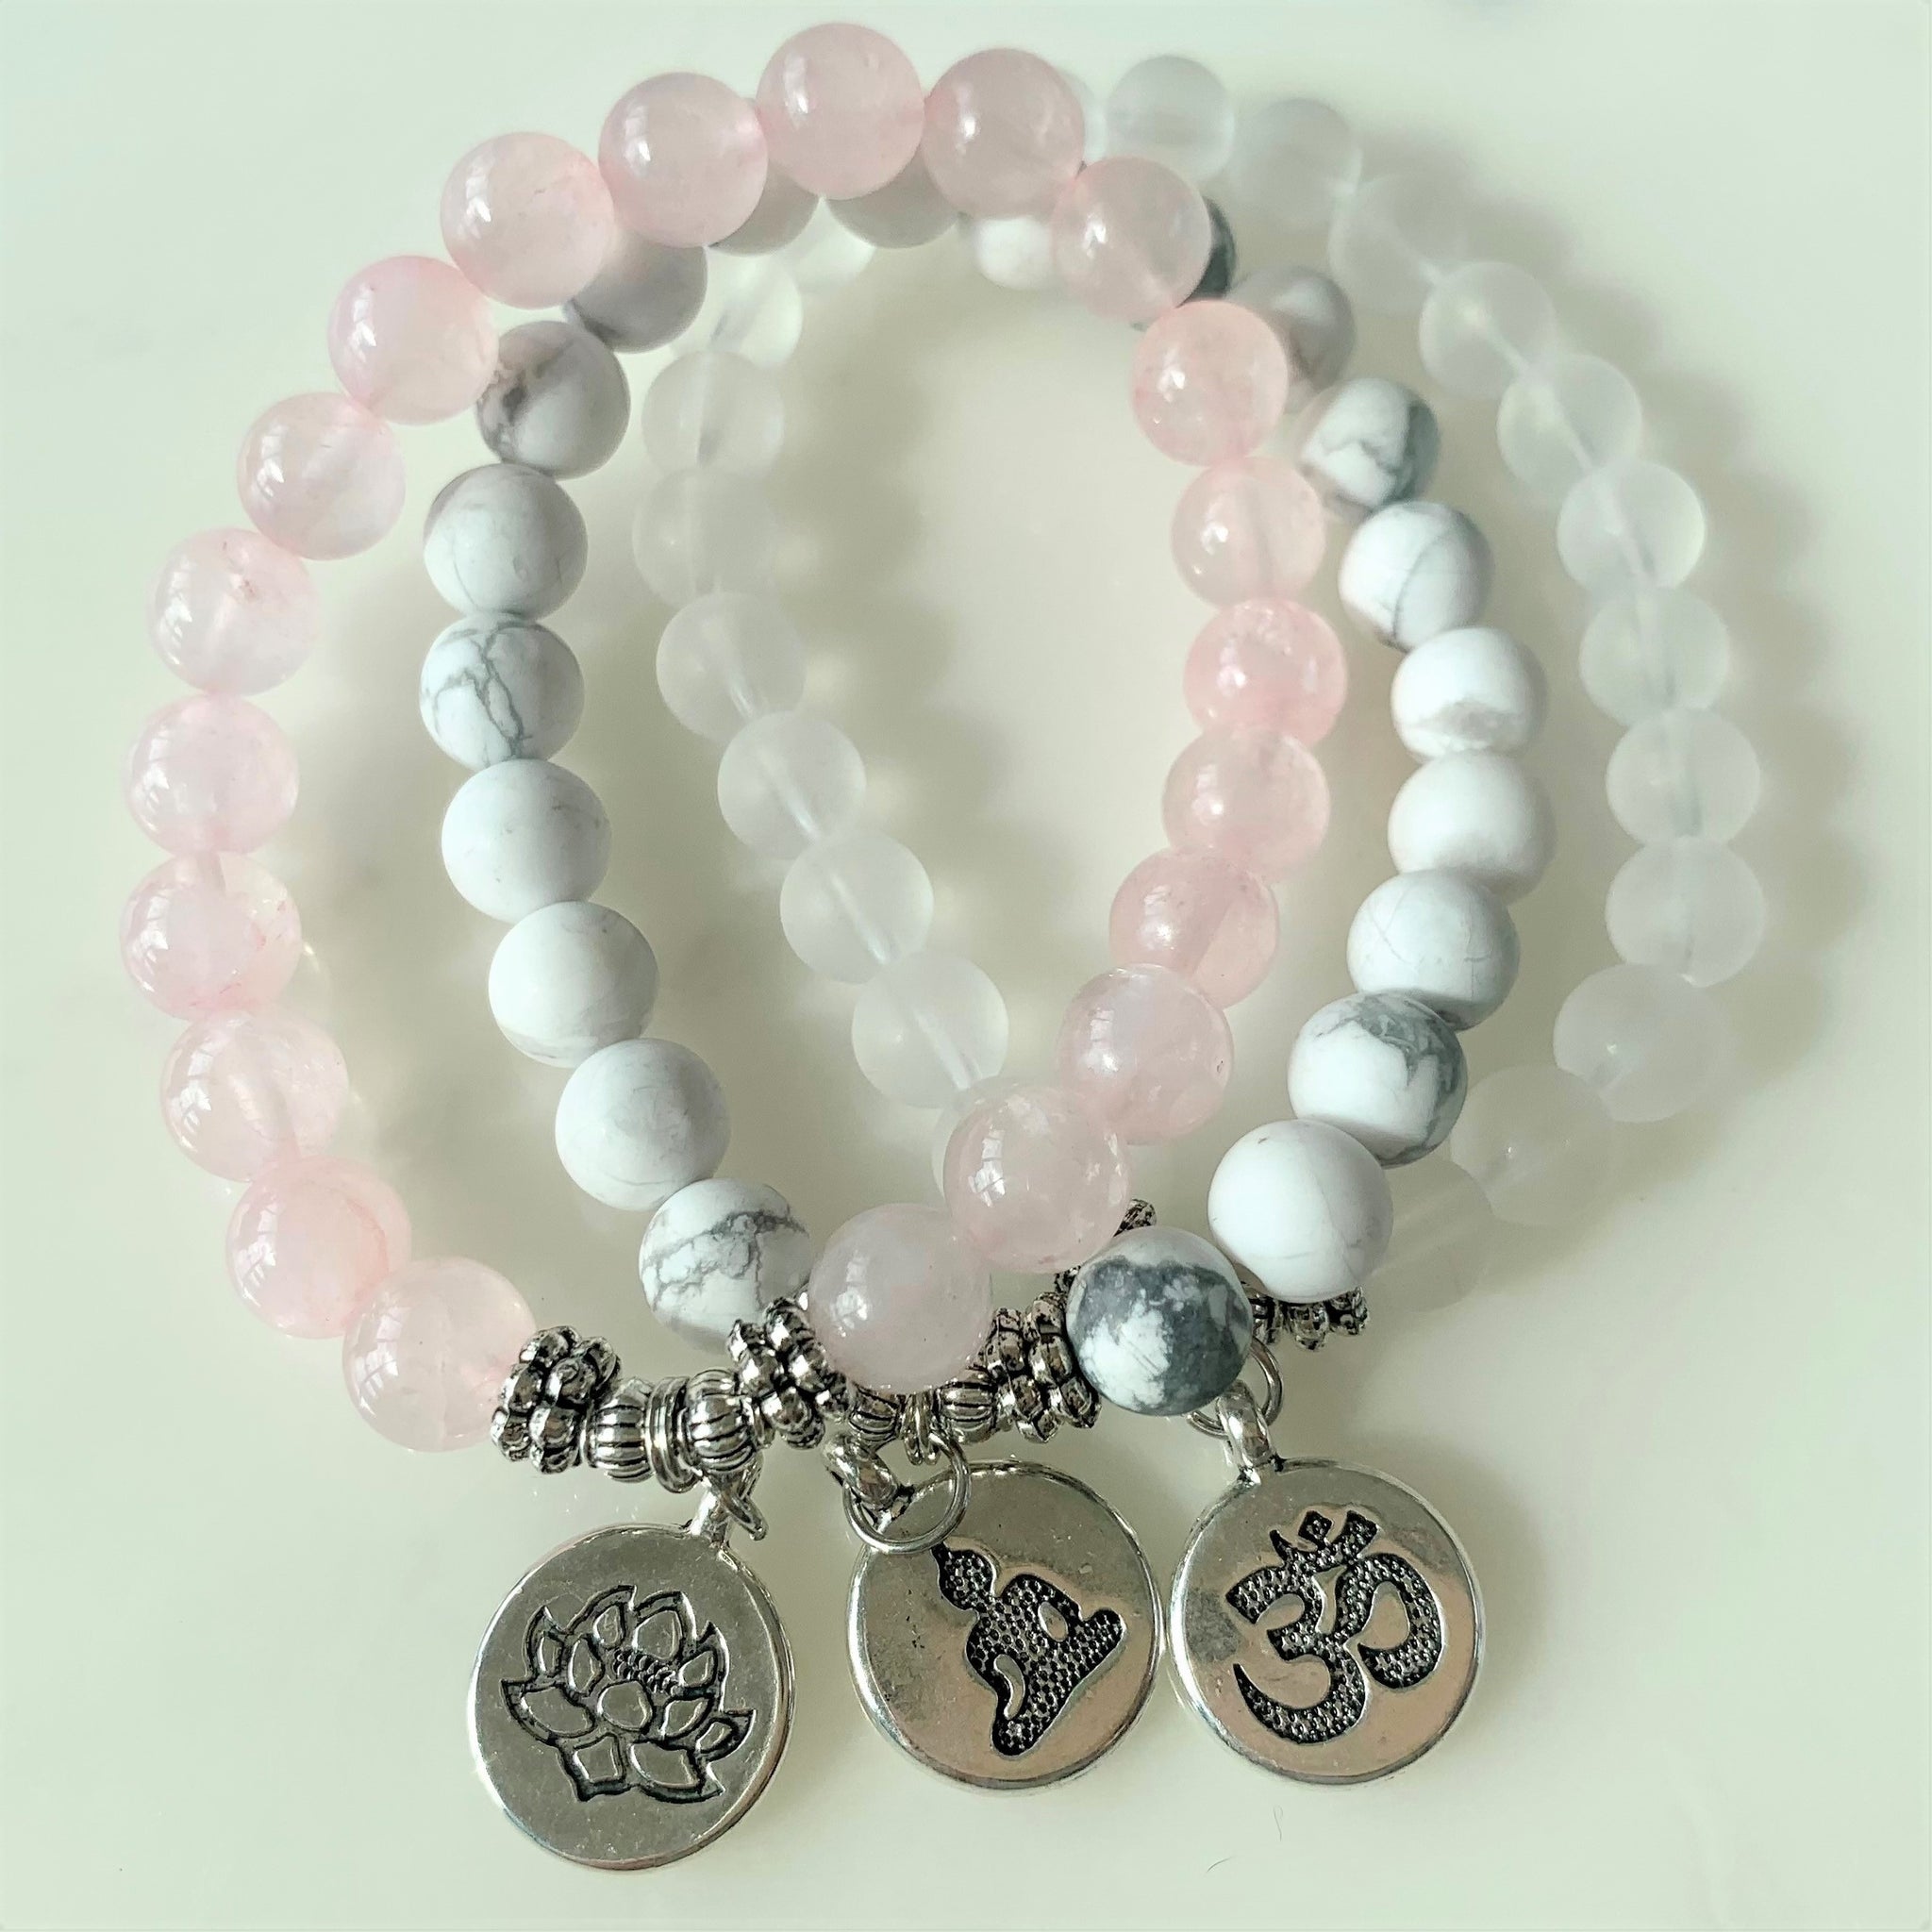 Connect - Divine Energy Bracelets